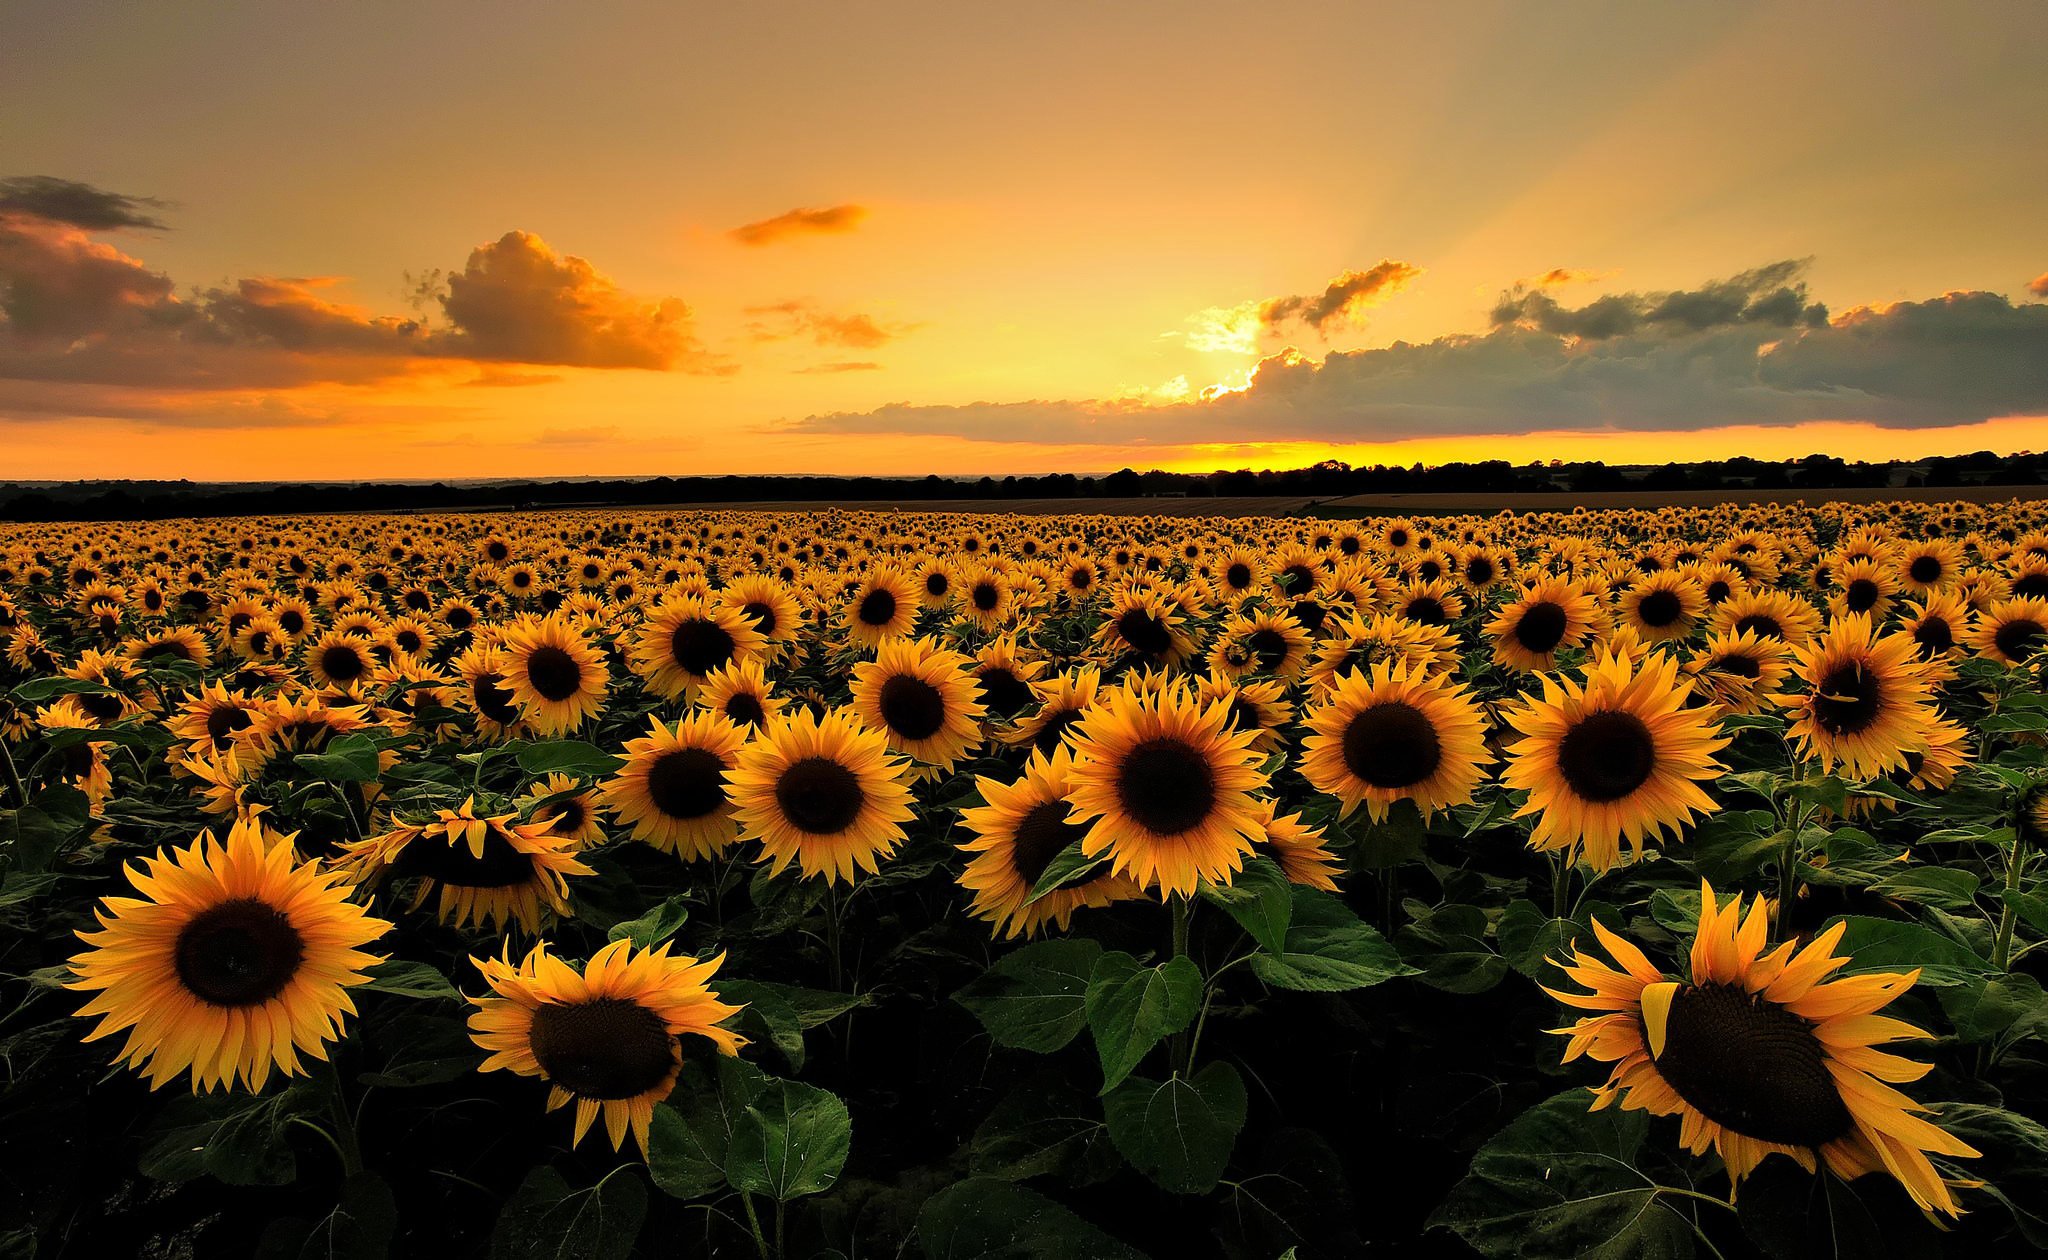 clouds, Sunflowers, Sunset, Field Wallpaper